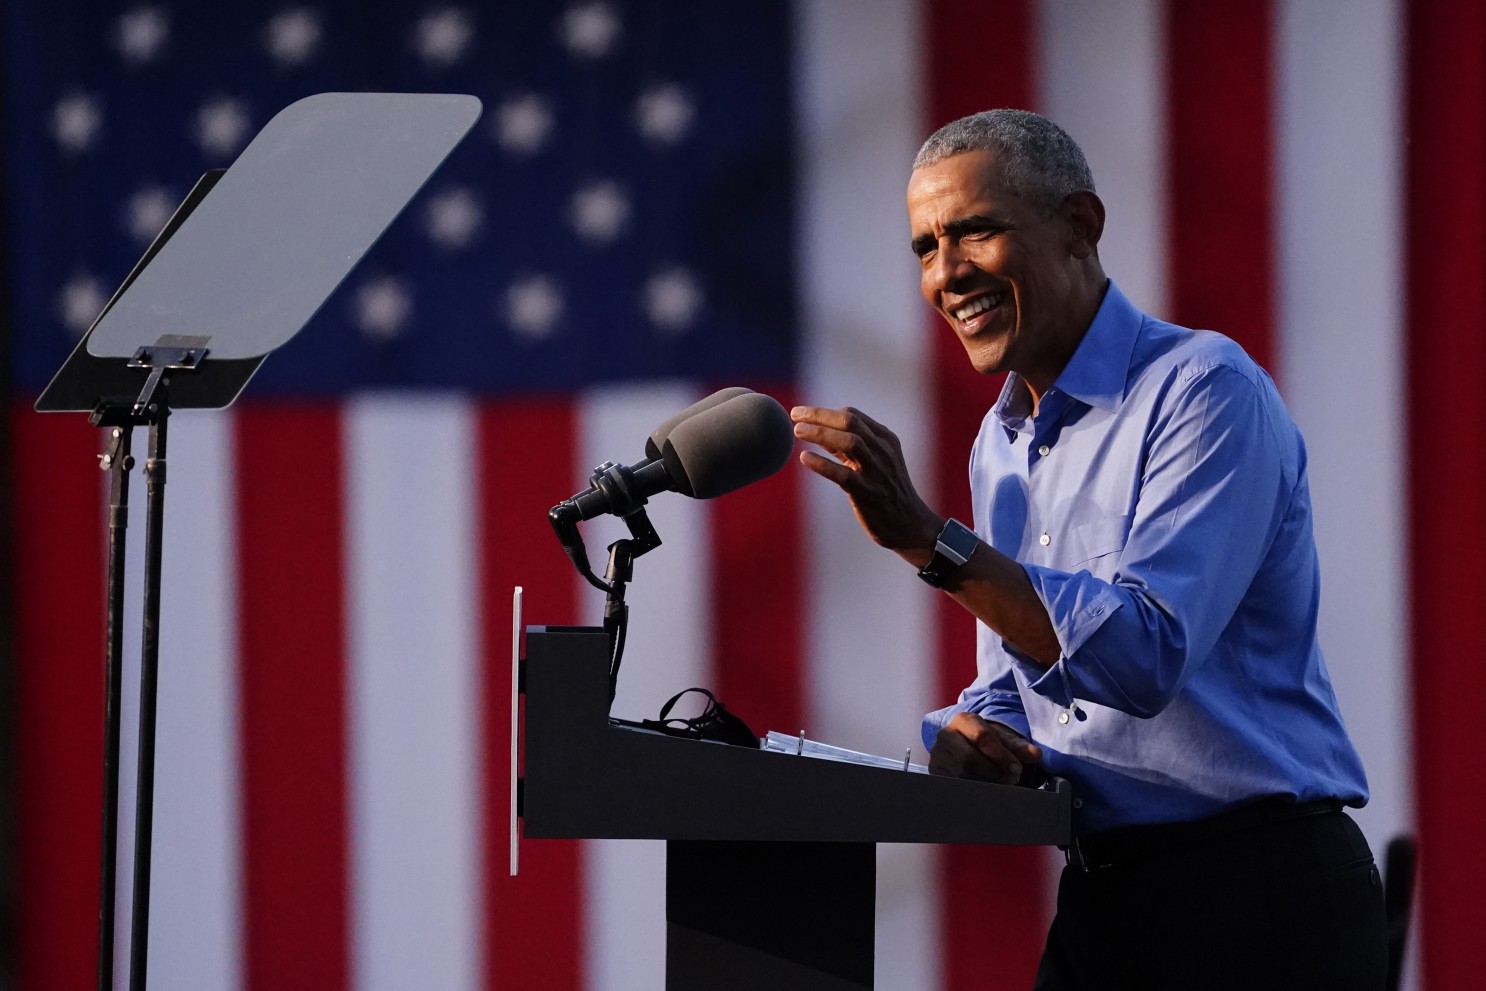 Ông Obama là người có đóng góp quan trọng trong chiến dịch tranh cử của ông Biden (ảnh: CNN)